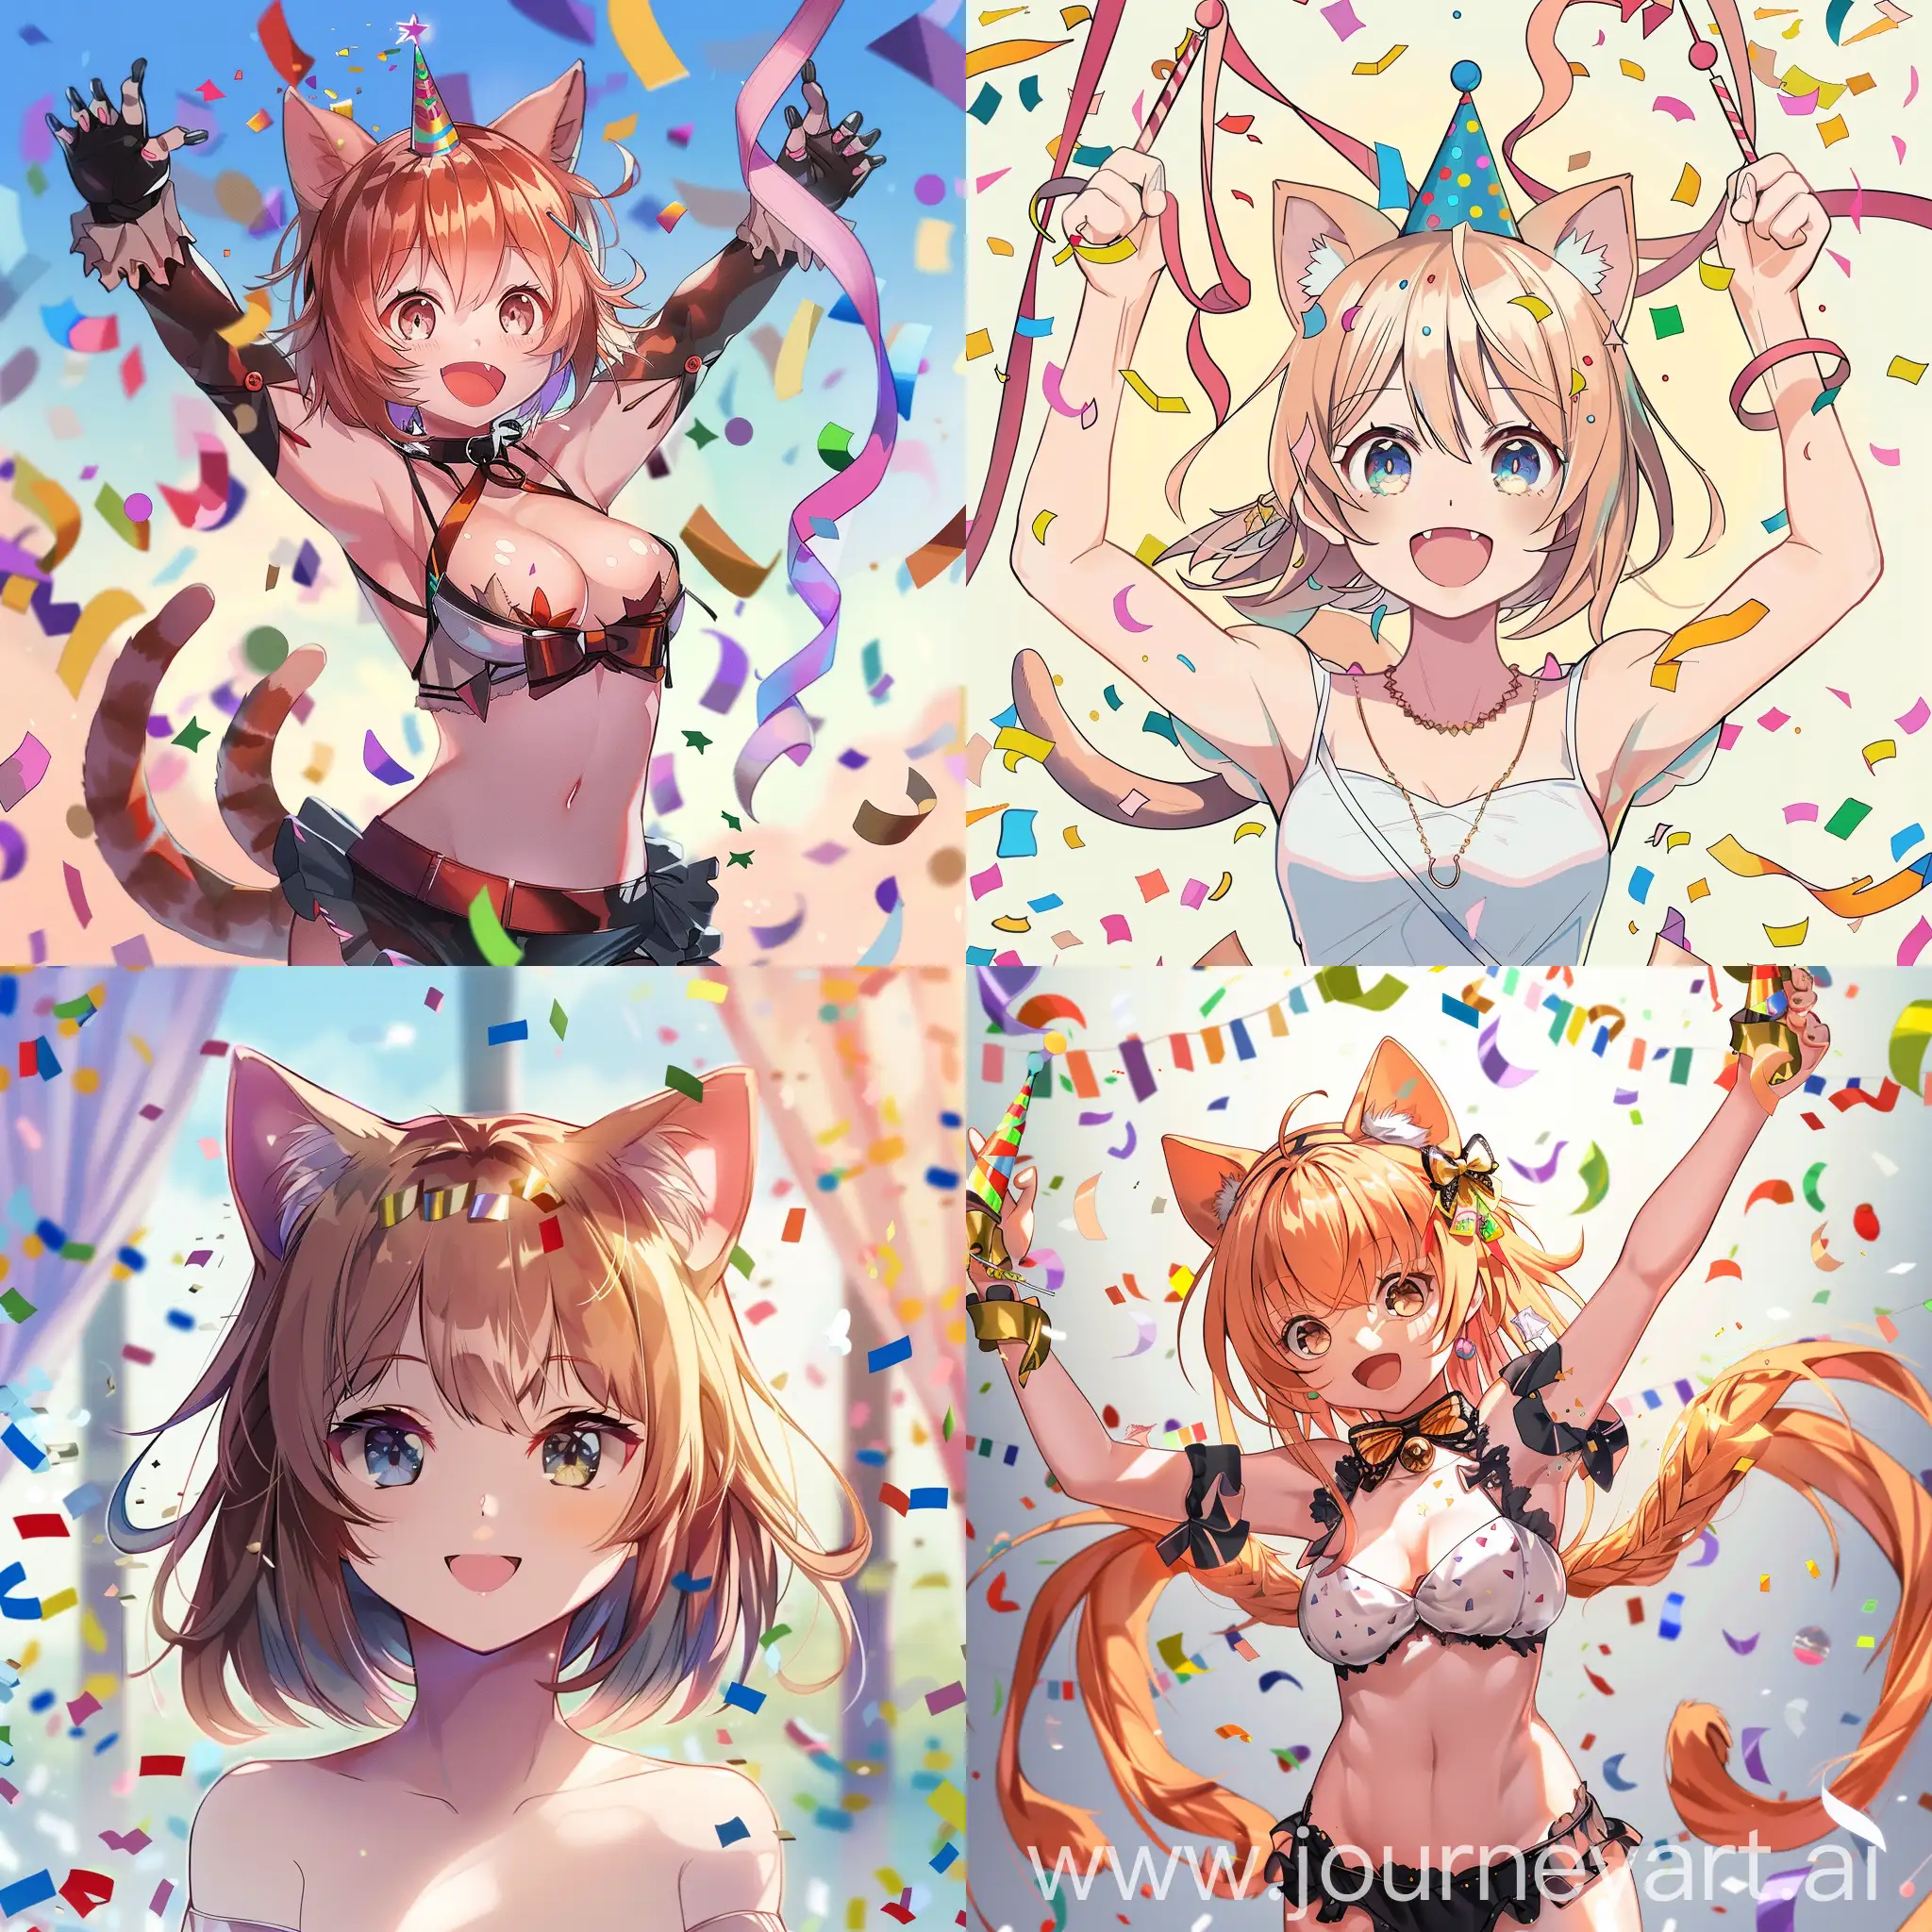 Anime-Catgirl-Celebration-with-Confetti-Burst